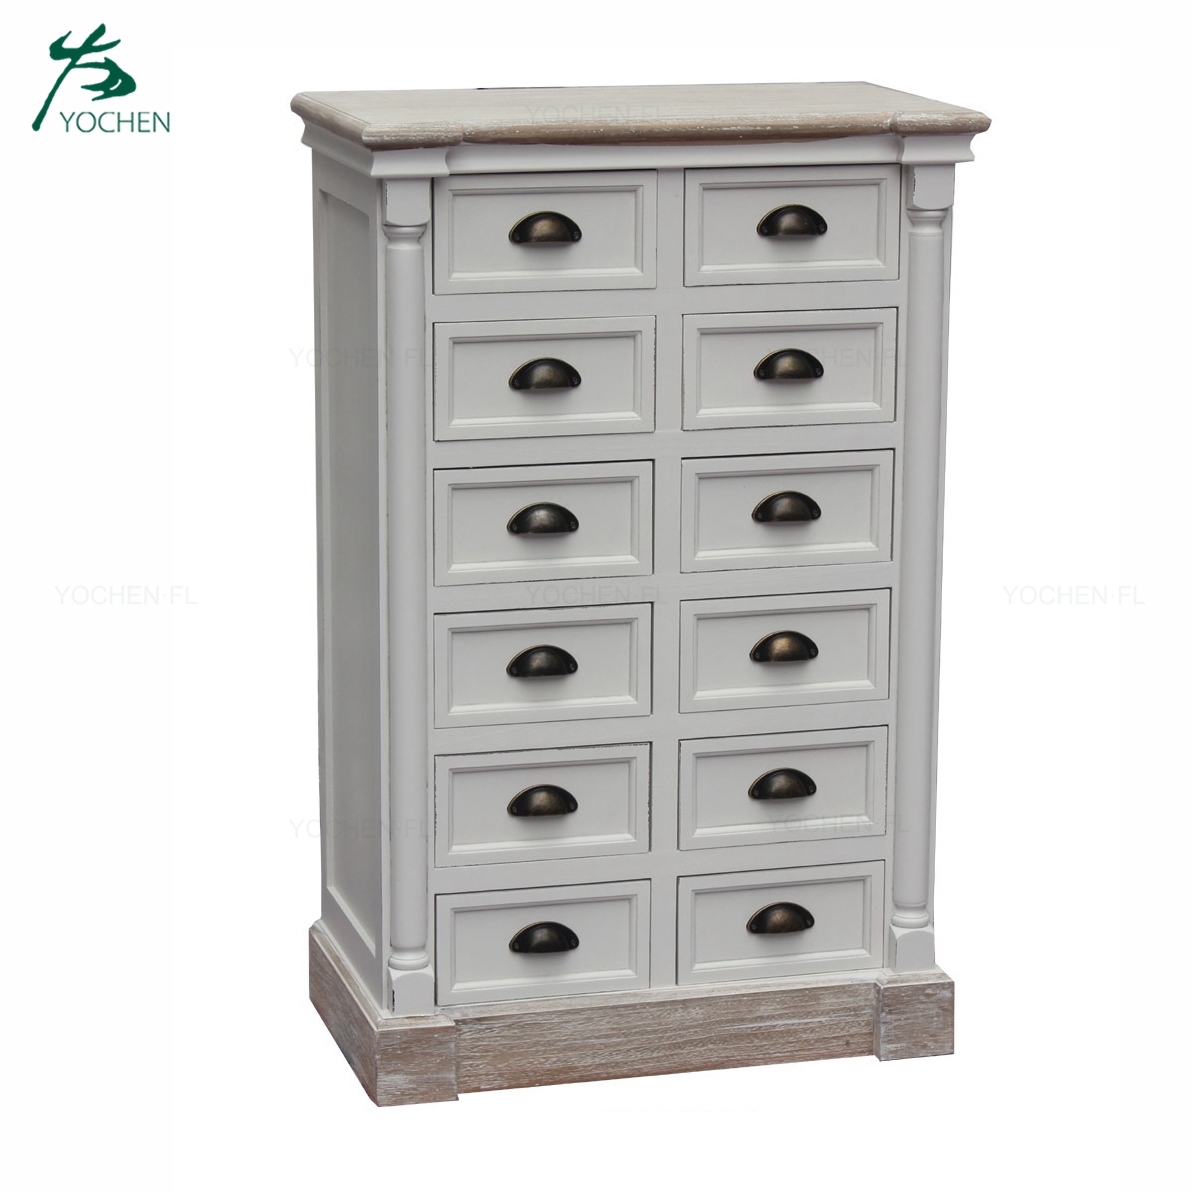 natural wood color living room drawer furniture storage cabinet